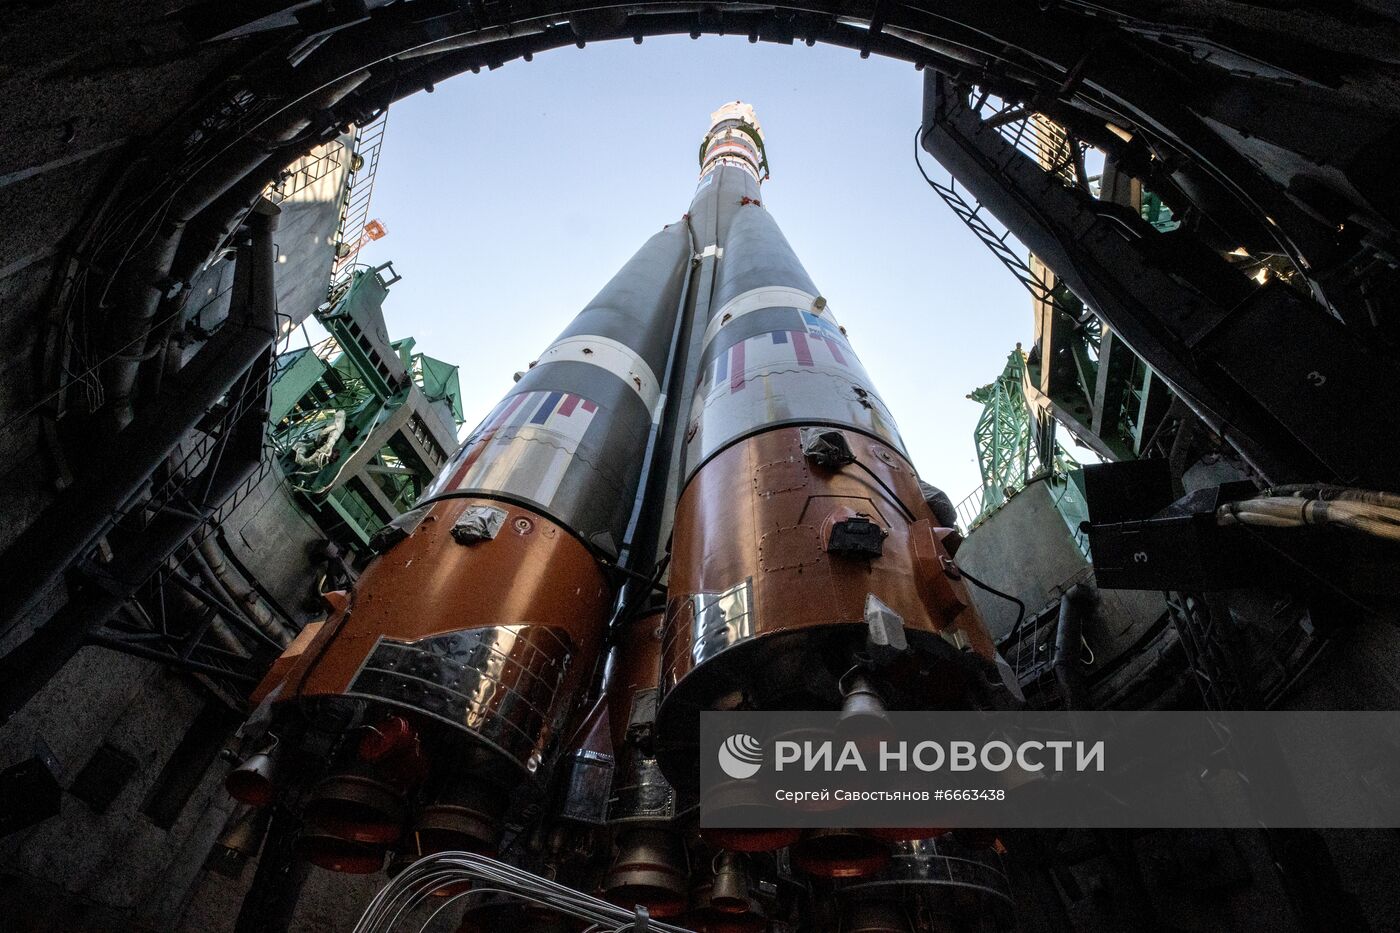 Вывоз ракеты-носителя с ТПК "Союз МС-19" на стартовую площадку